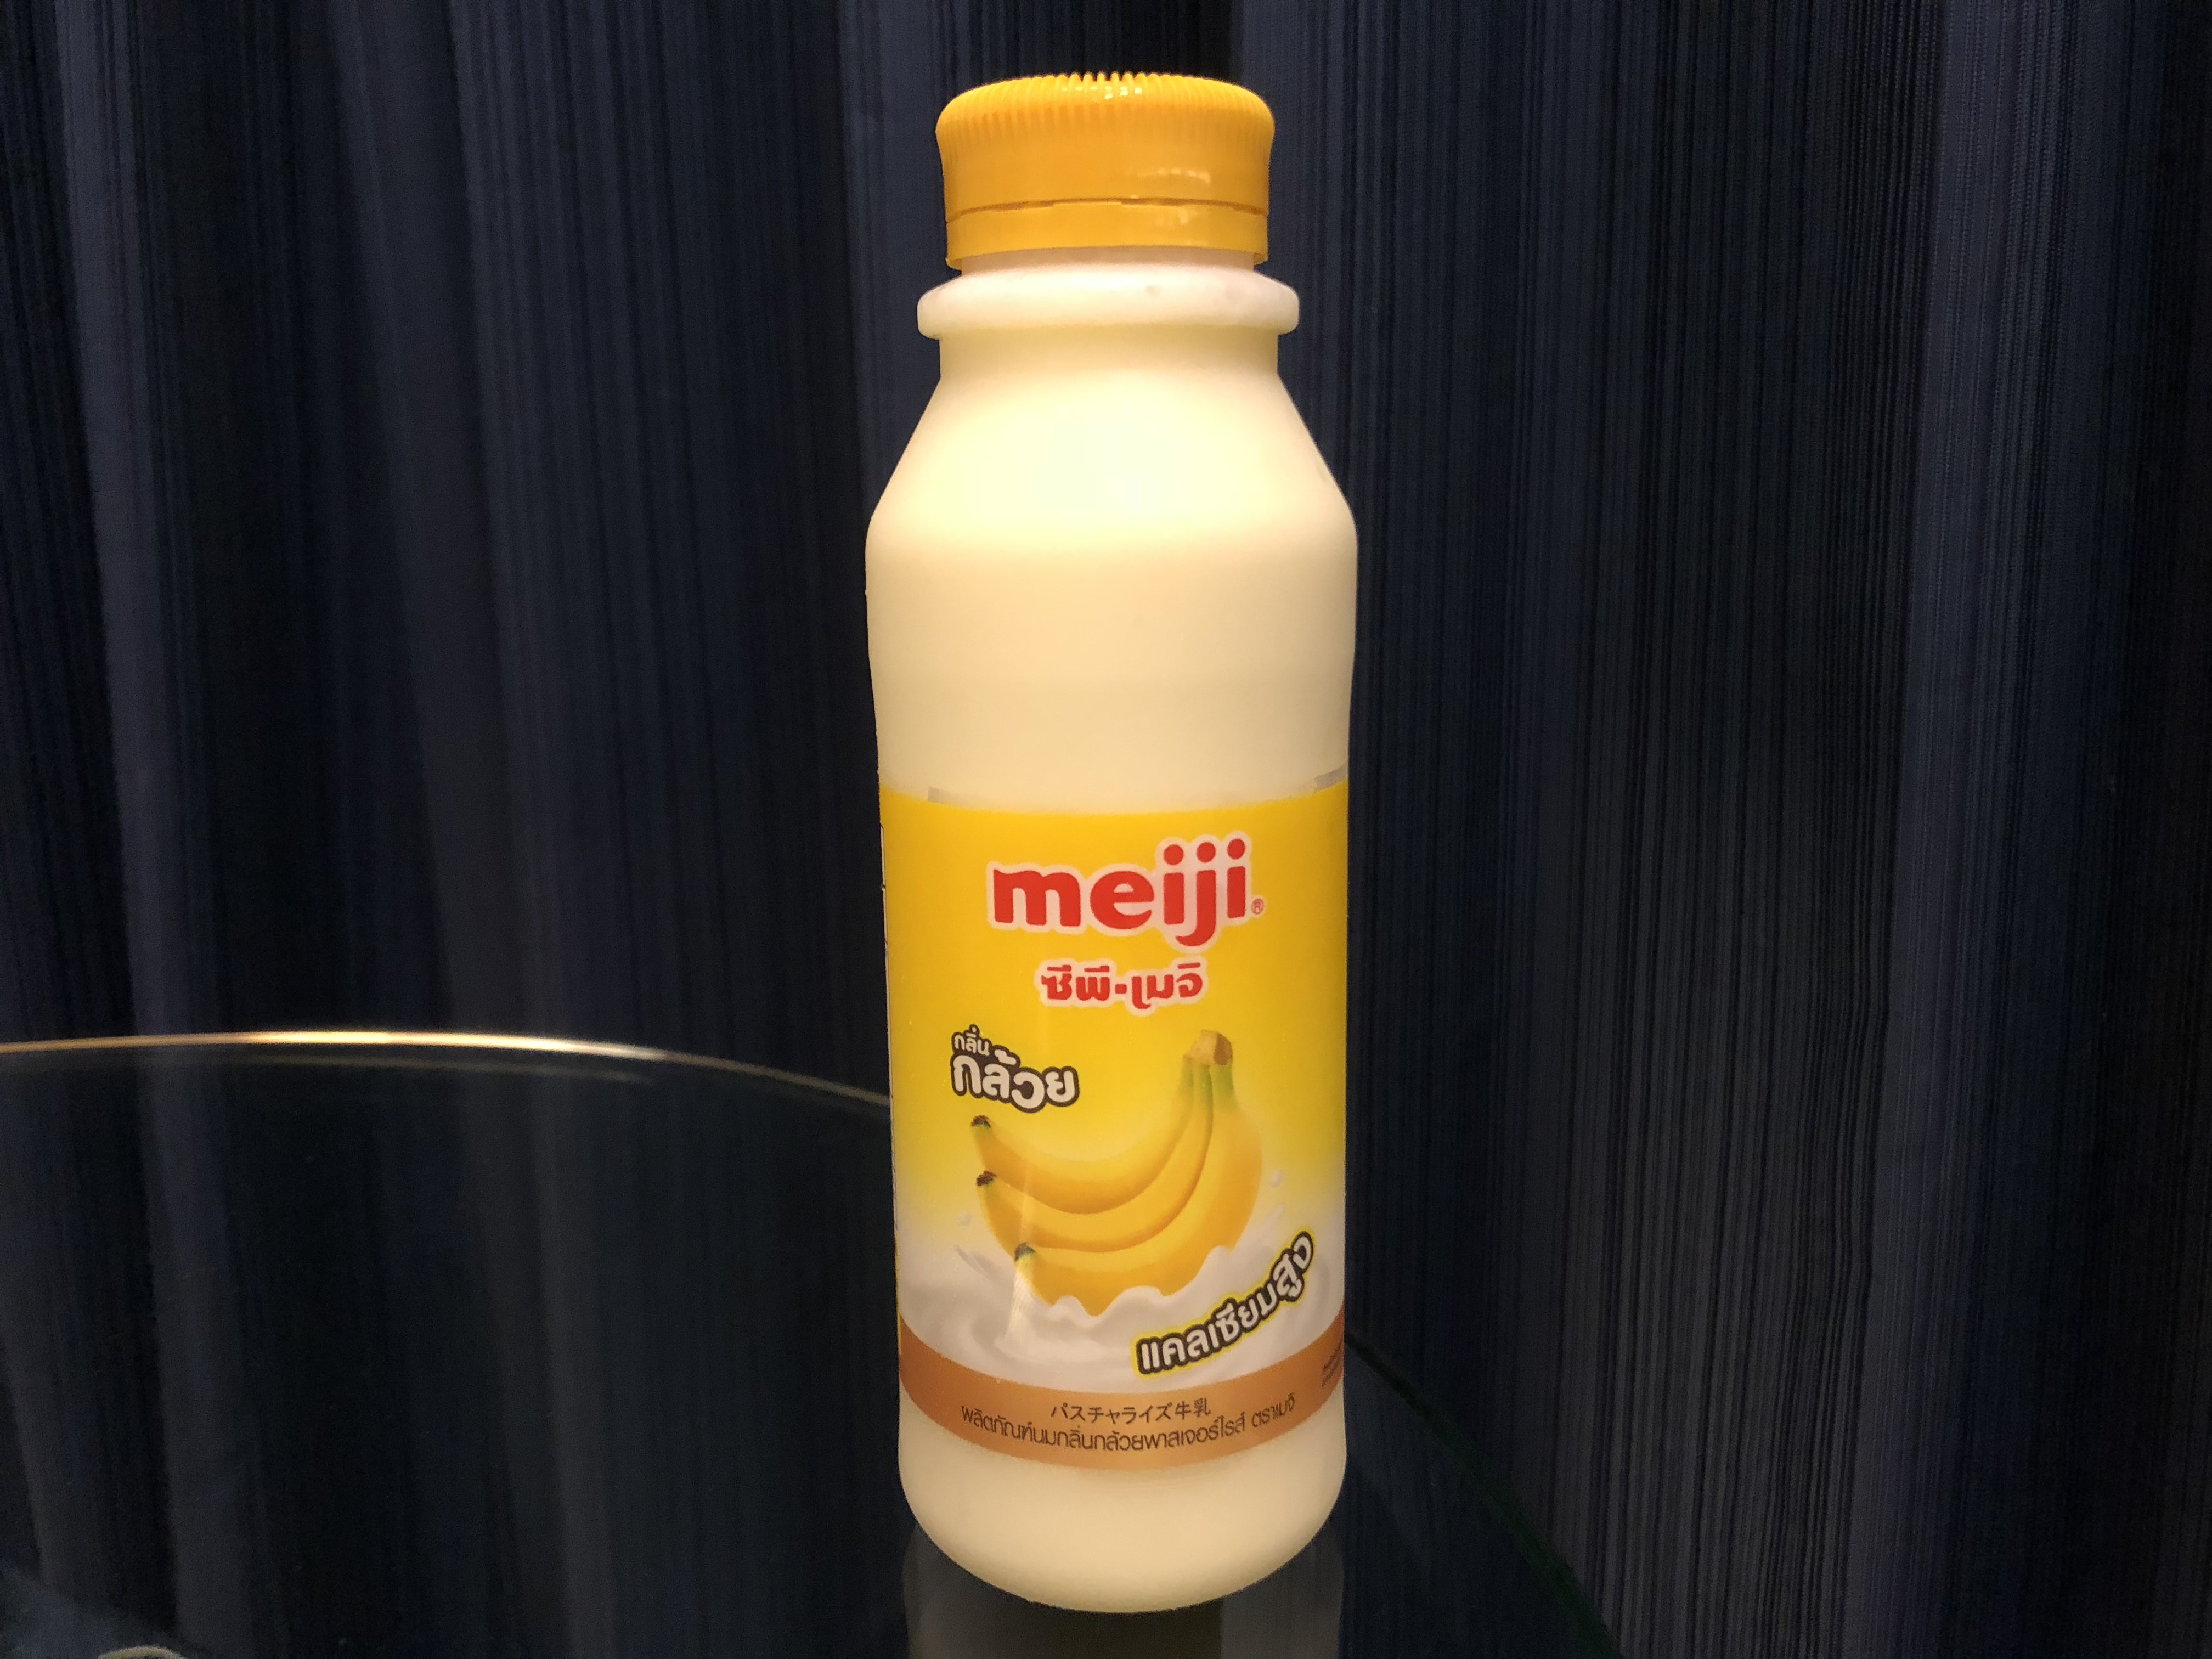 パスチャライズ牛乳 まるでジュース タイのmeiji牛乳シリーズがうまい アジアの歩き方